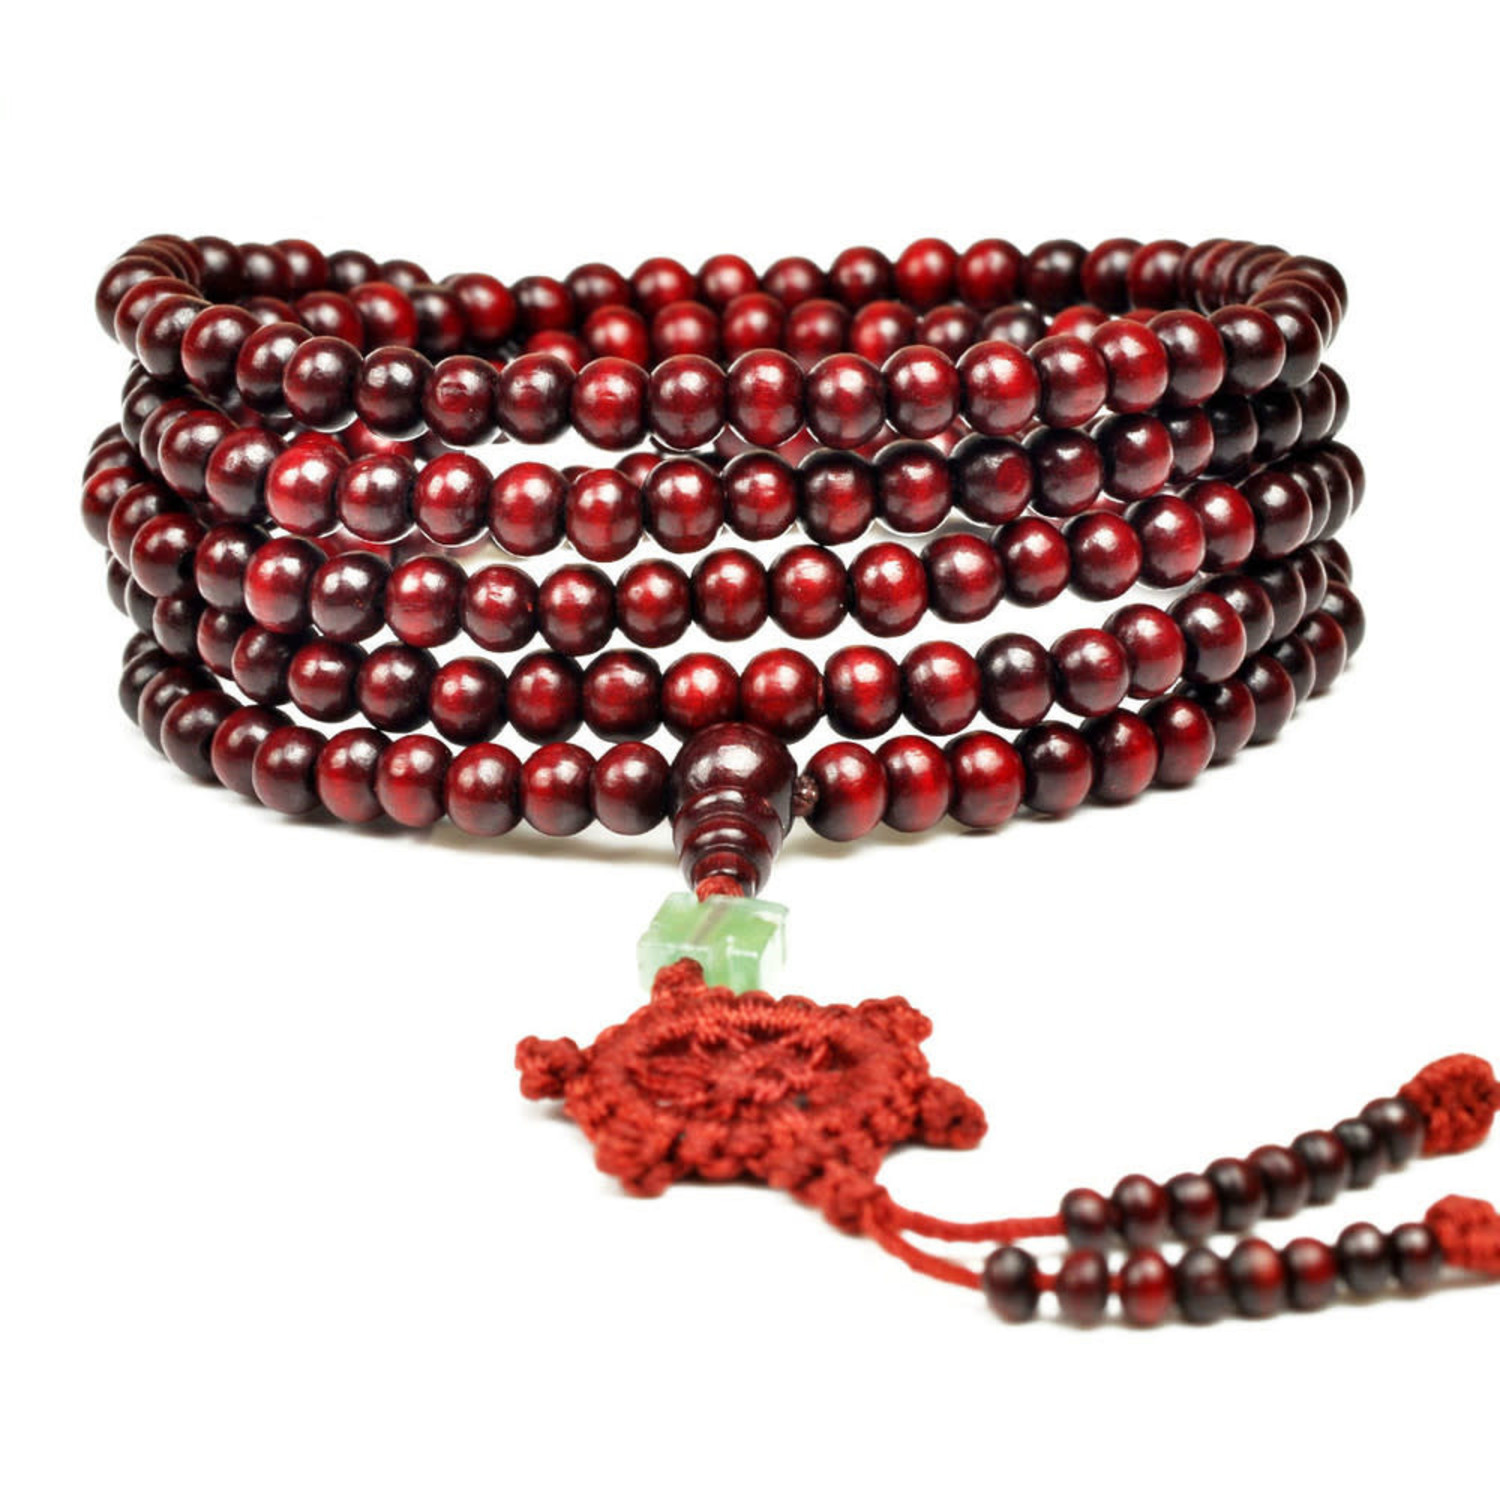 Shaolin Monk Zen Prayer Beads Necklace - 54 Beads